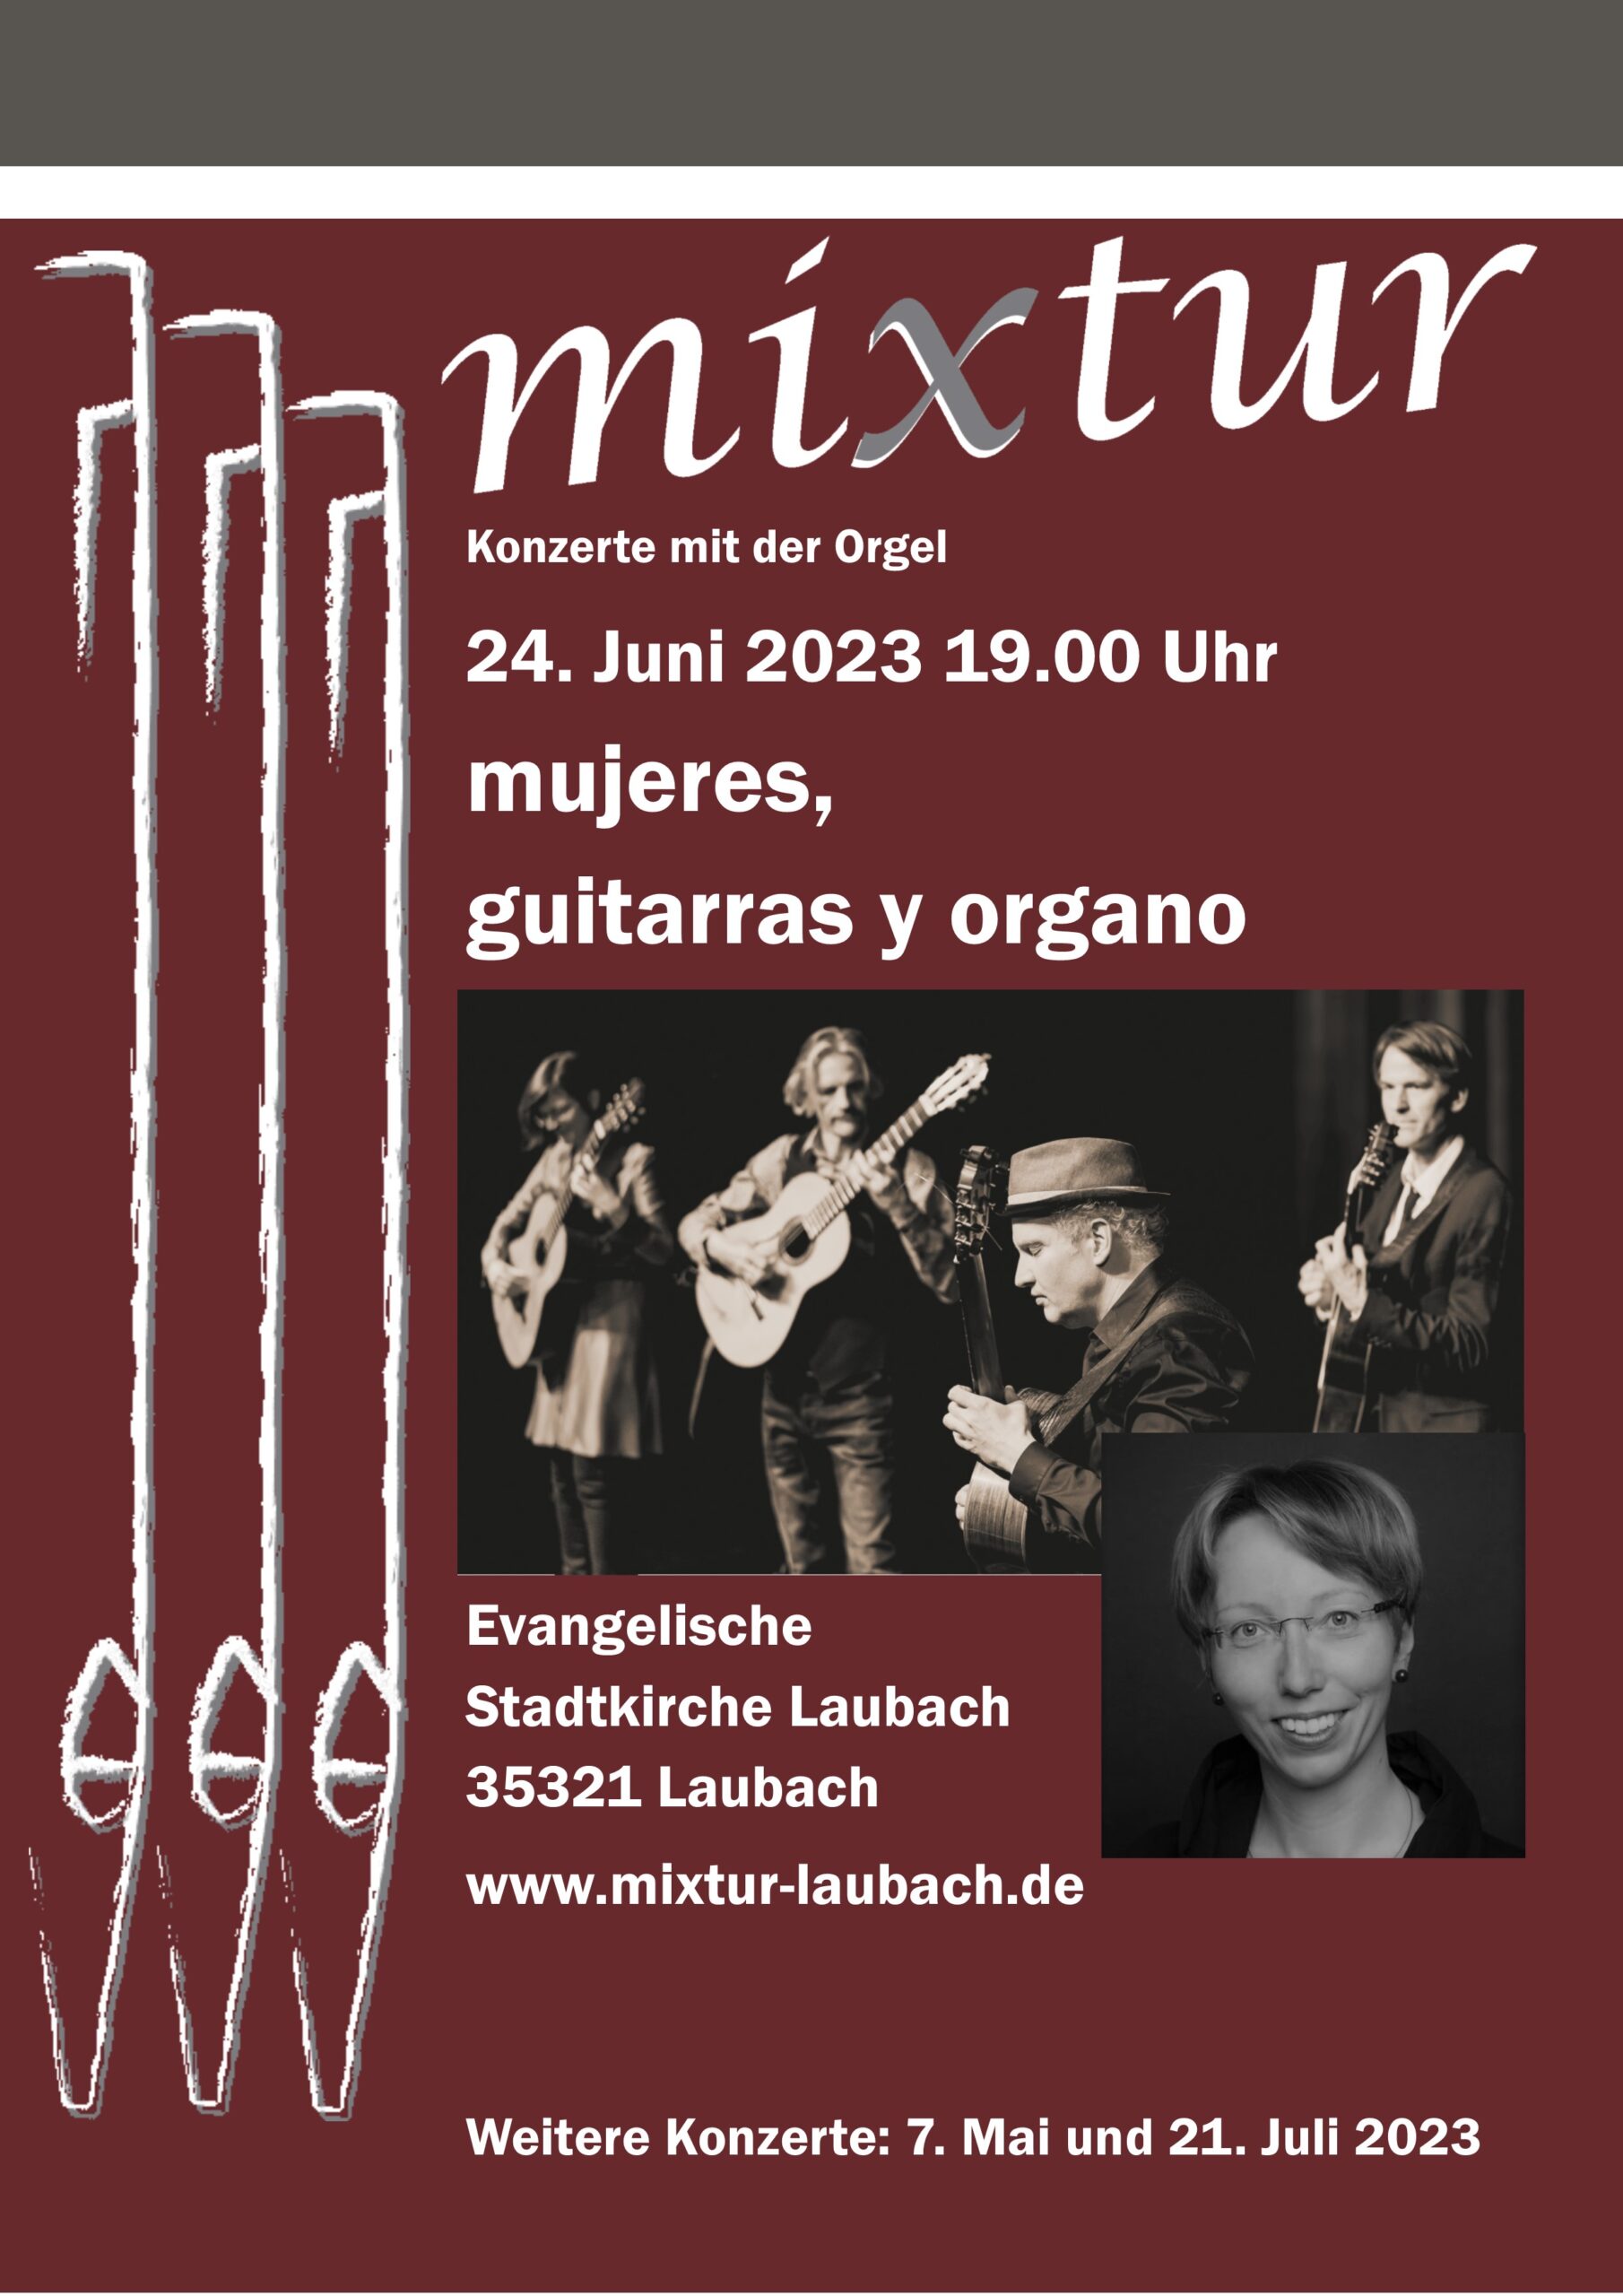 "mixtur" Konzerte mit der Orgel "mujeres, guitarras y organo"